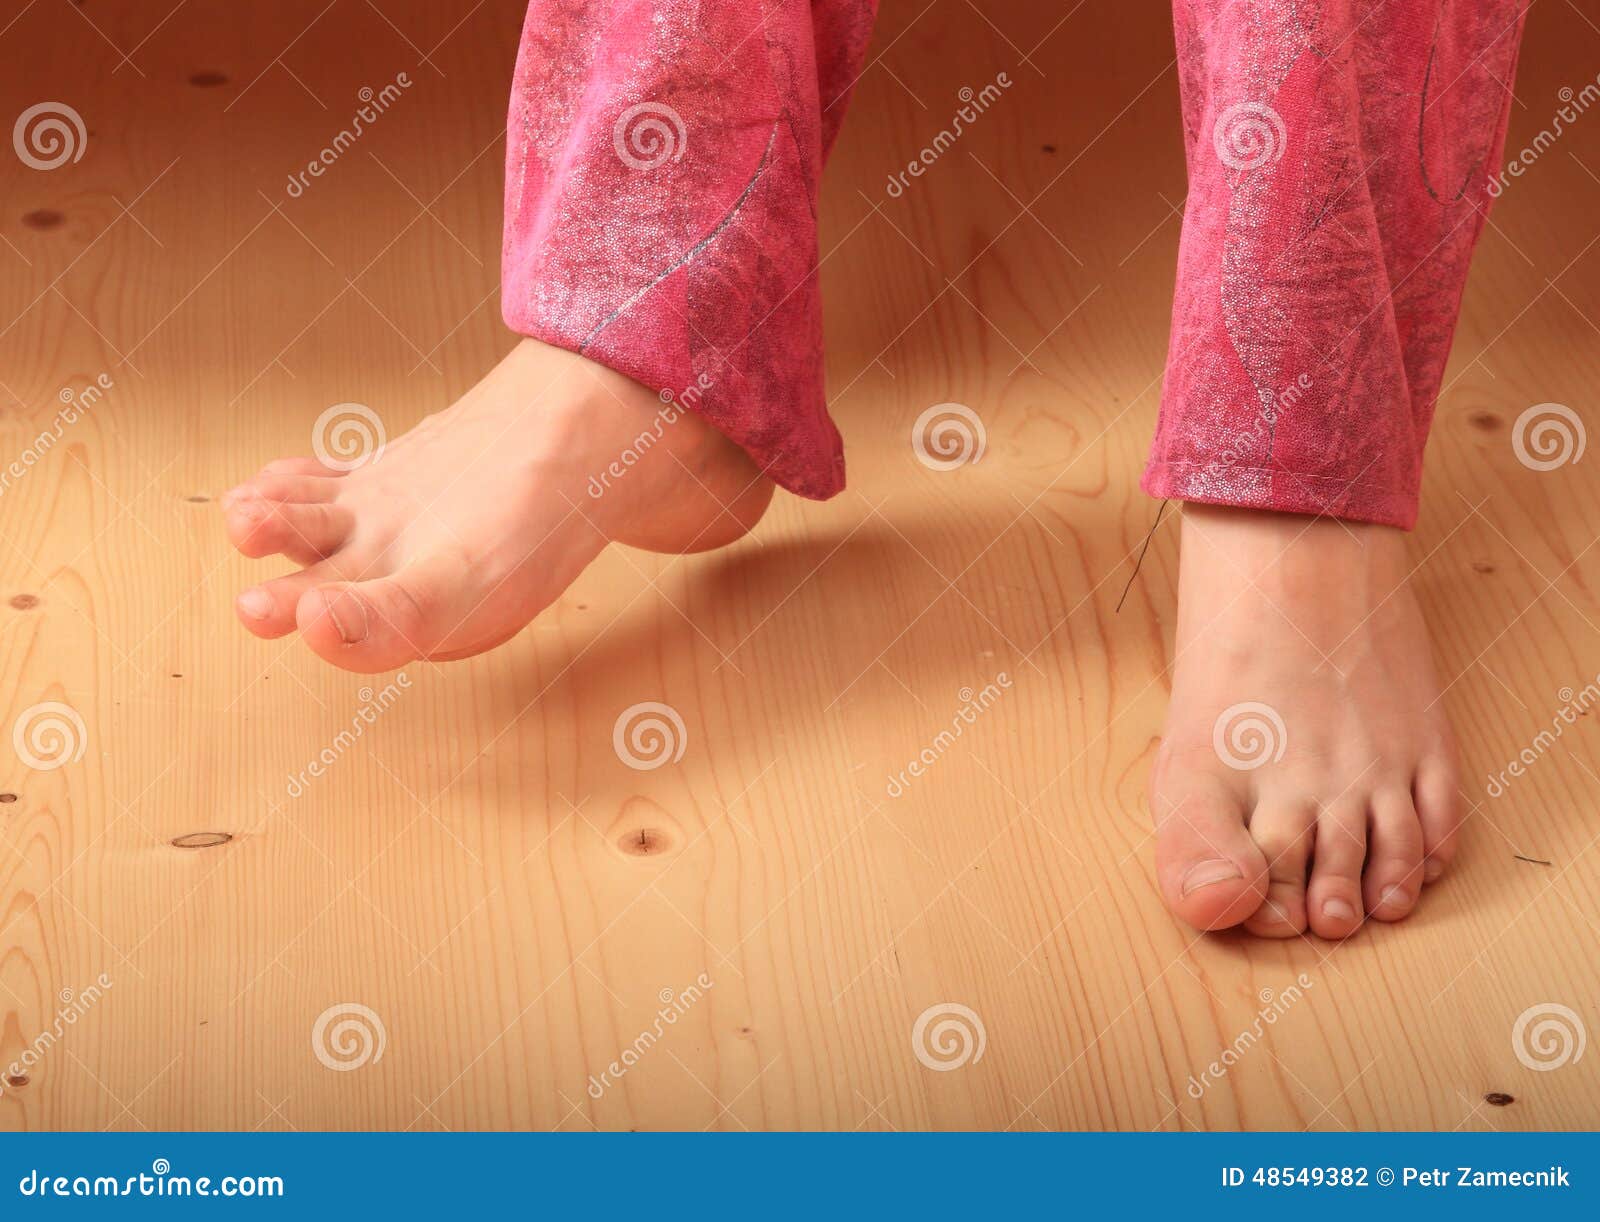 bare feet on wooden floor